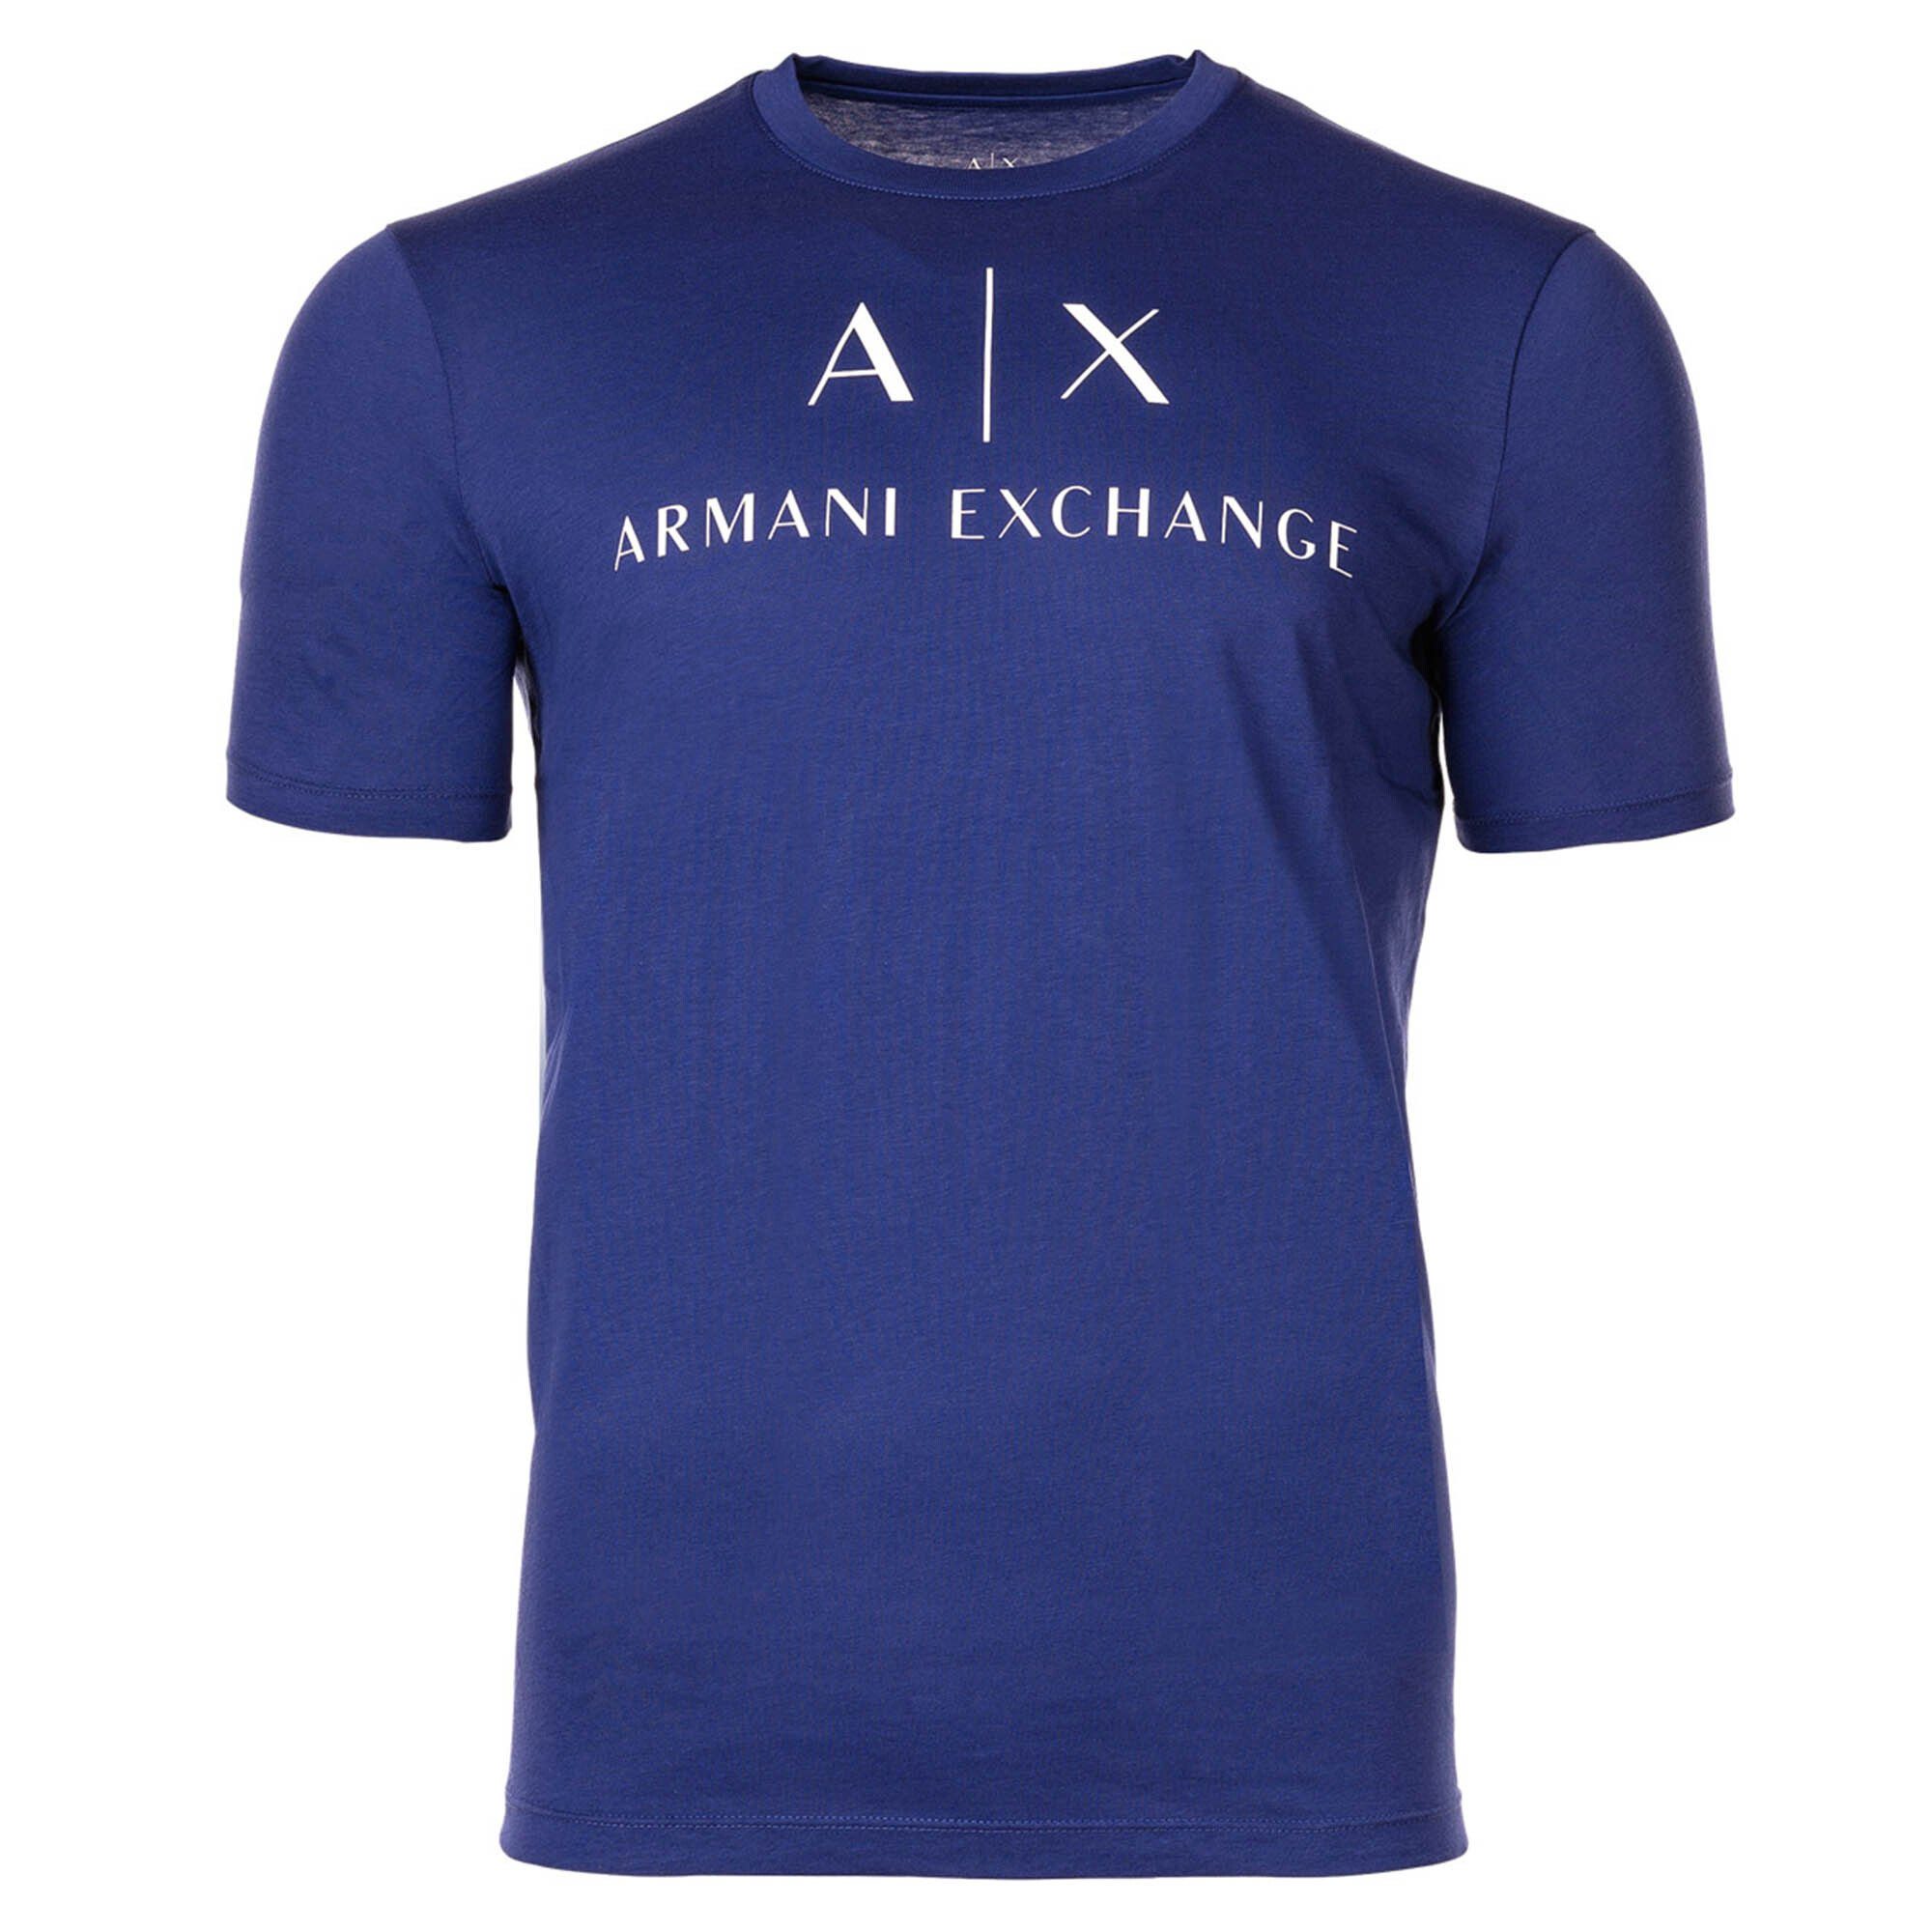 ARMANI EXCHANGE T-Shirt Herren T-Shirt - Schriftzug, Rundhals, Cotton Blau (New Ultramarine) | 